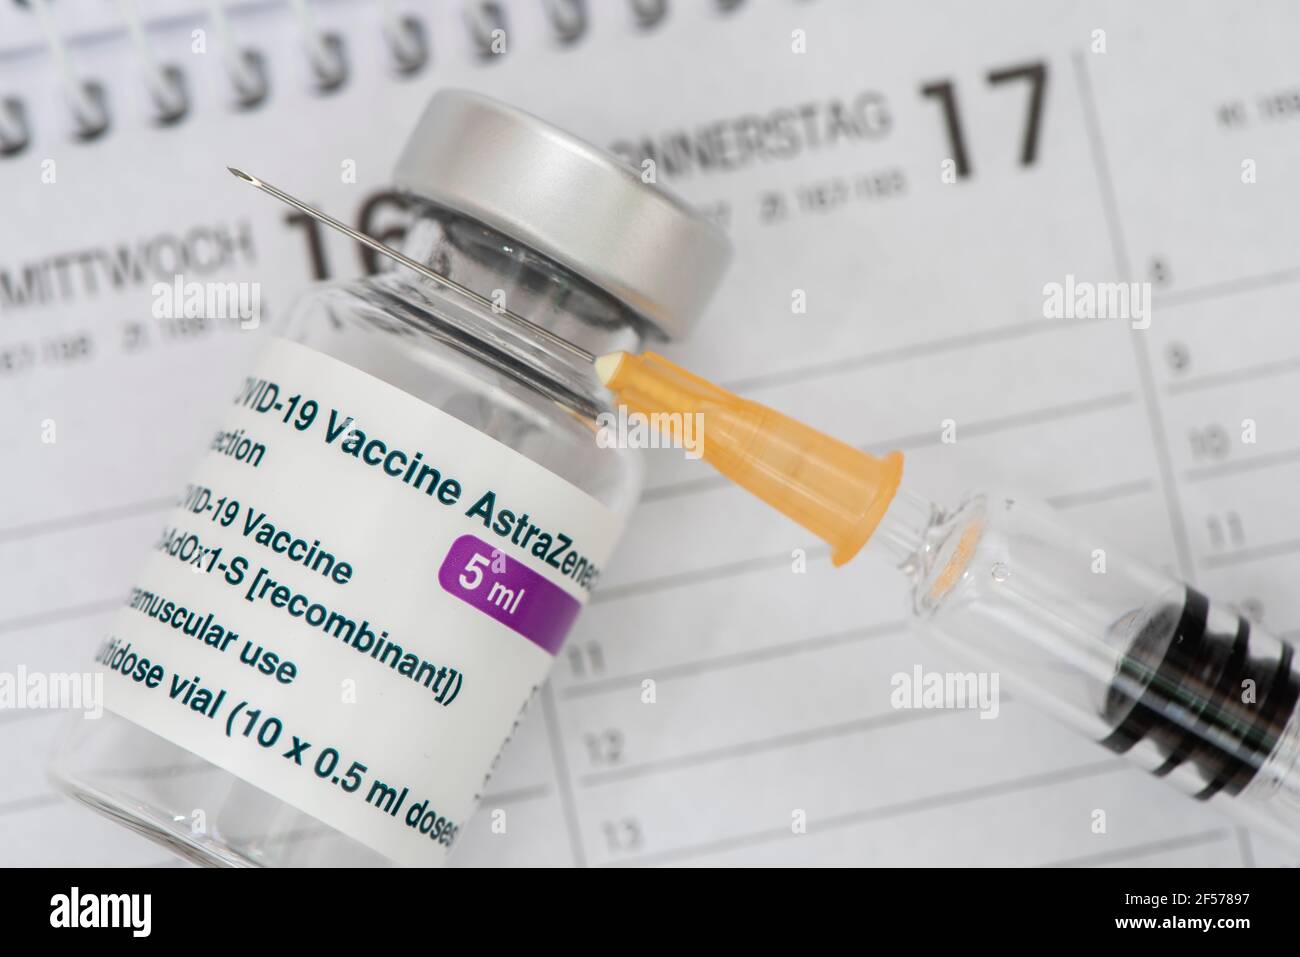 Original Impfampullen mit Impfstoff gegen Covid-19 Pandemie Foto Stock